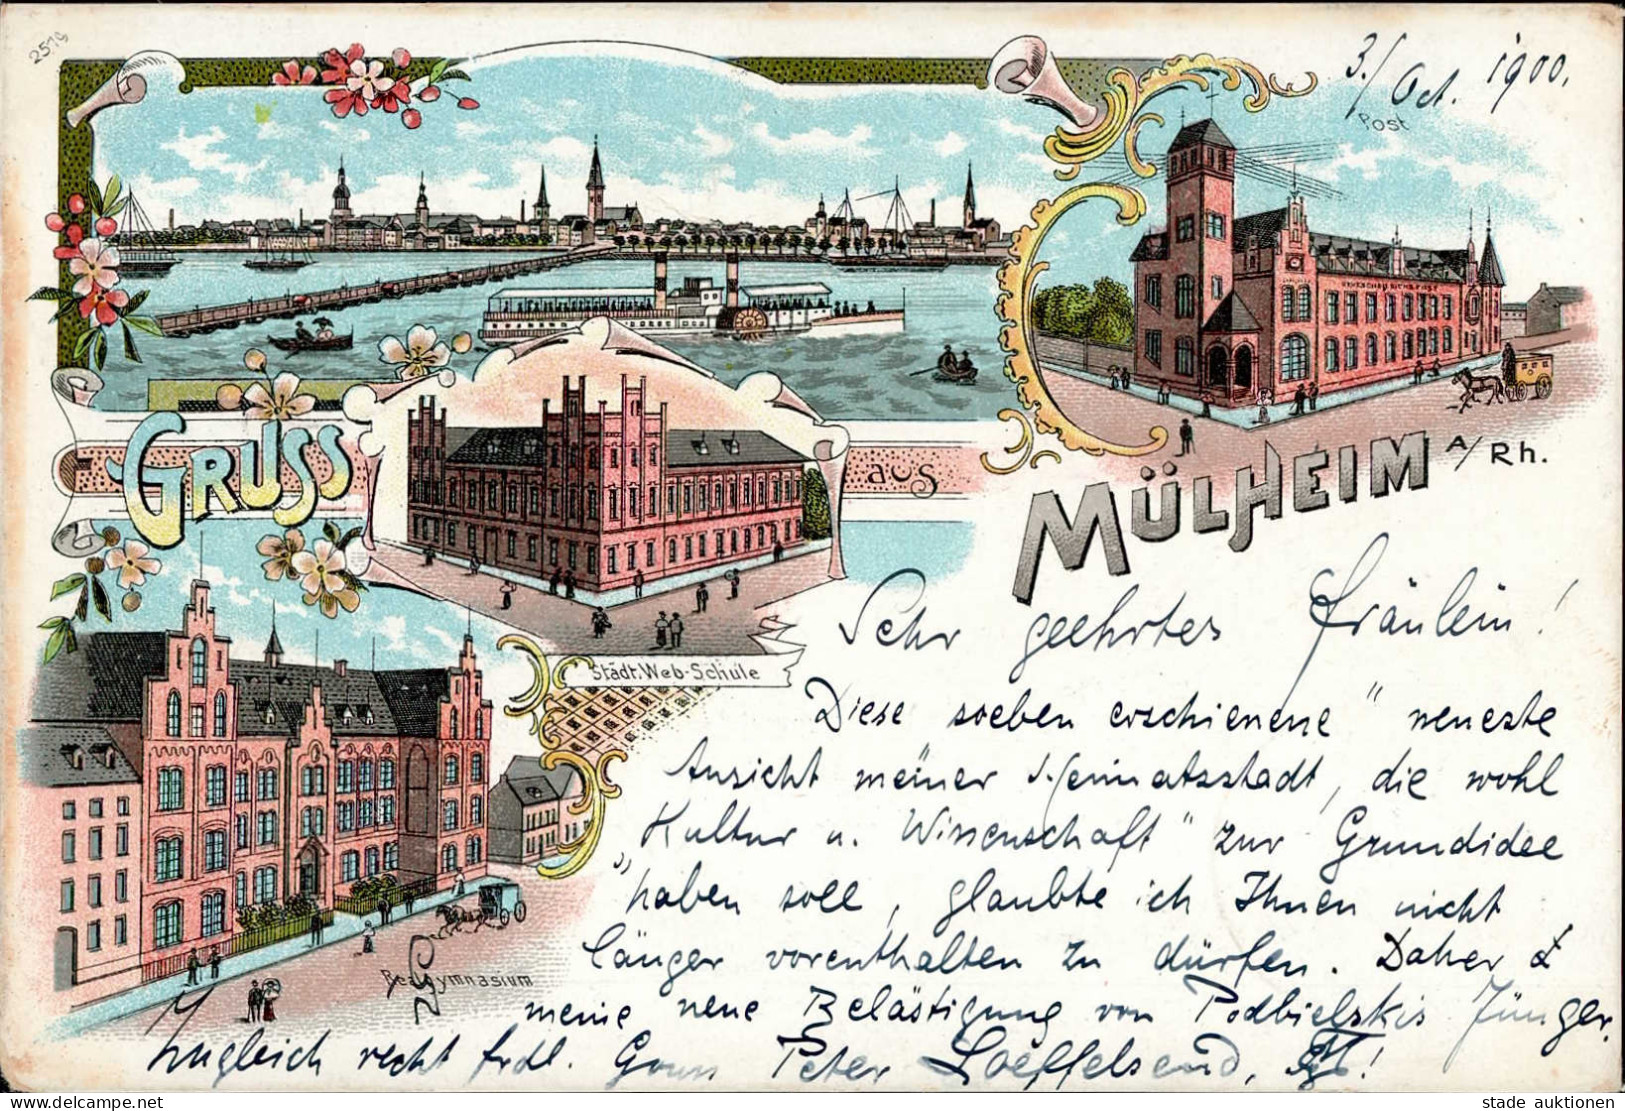 Köln Mülheim (5000) Realgymnasium Städtische Webschule 1900 I-II - Sager, Xavier